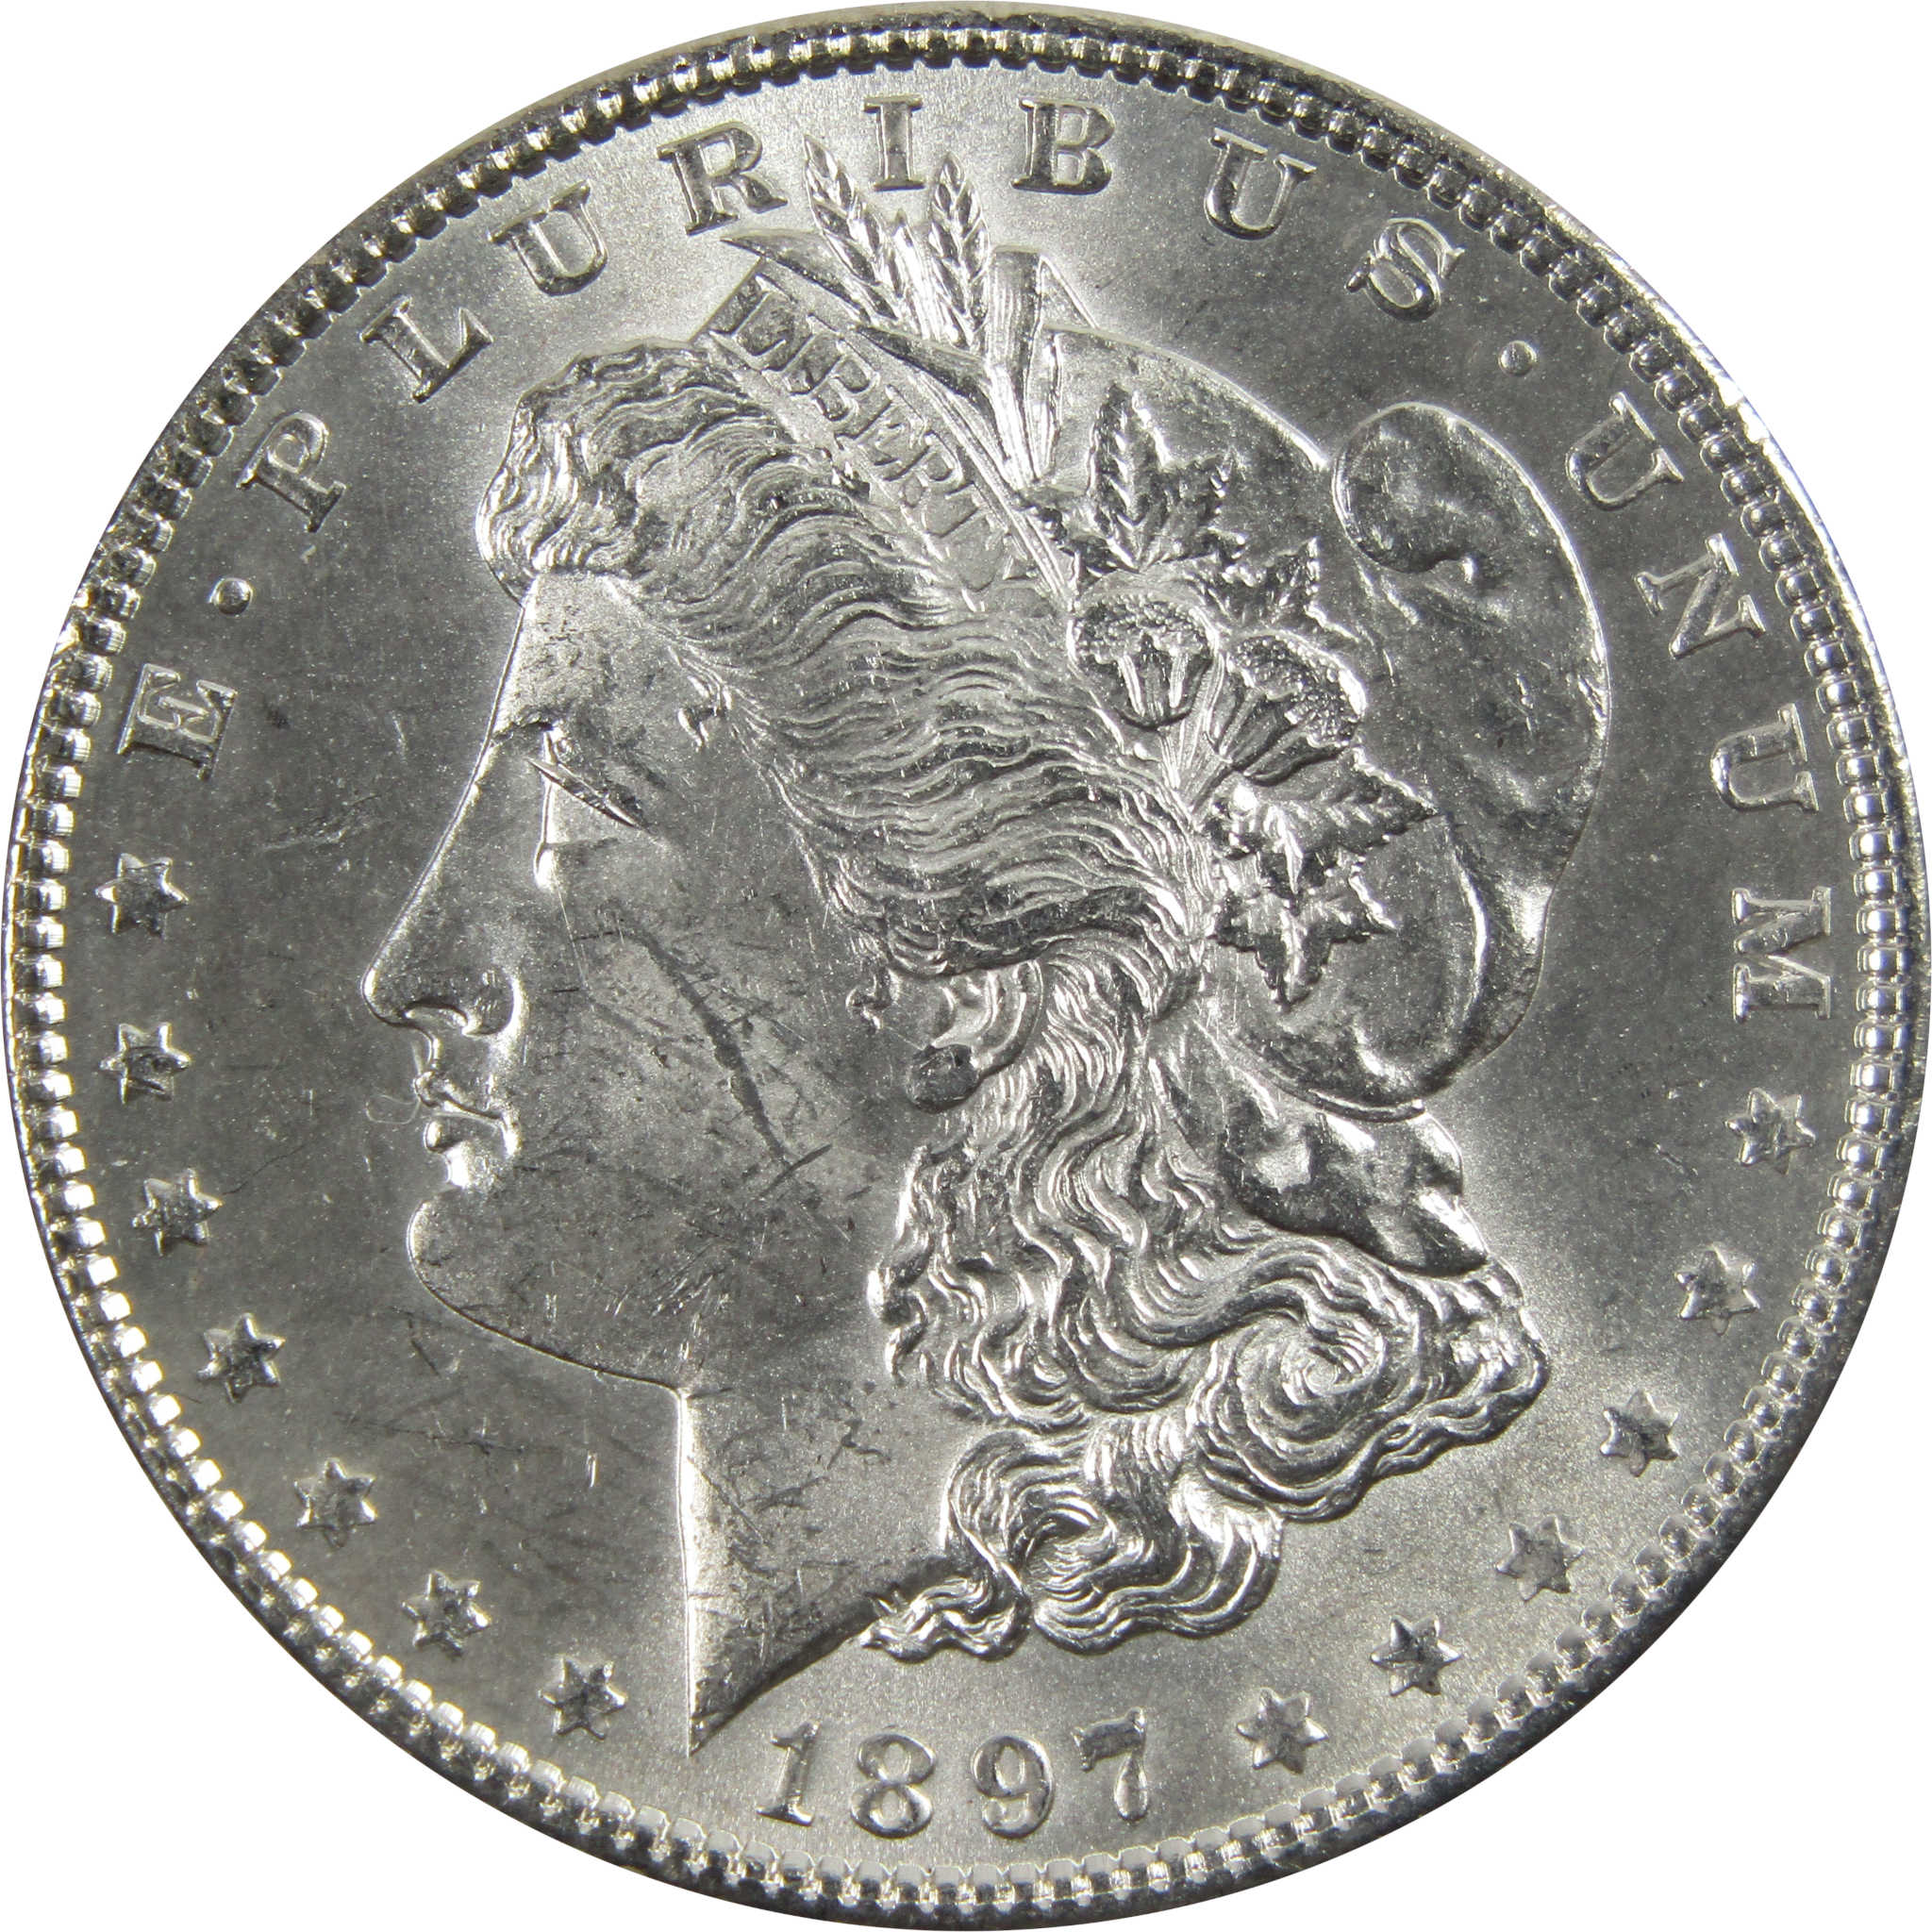 1897 Morgan Dollar BU Uncirculated 90% Silver $1 Coin SKU:I5149 - Morgan coin - Morgan silver dollar - Morgan silver dollar for sale - Profile Coins &amp; Collectibles